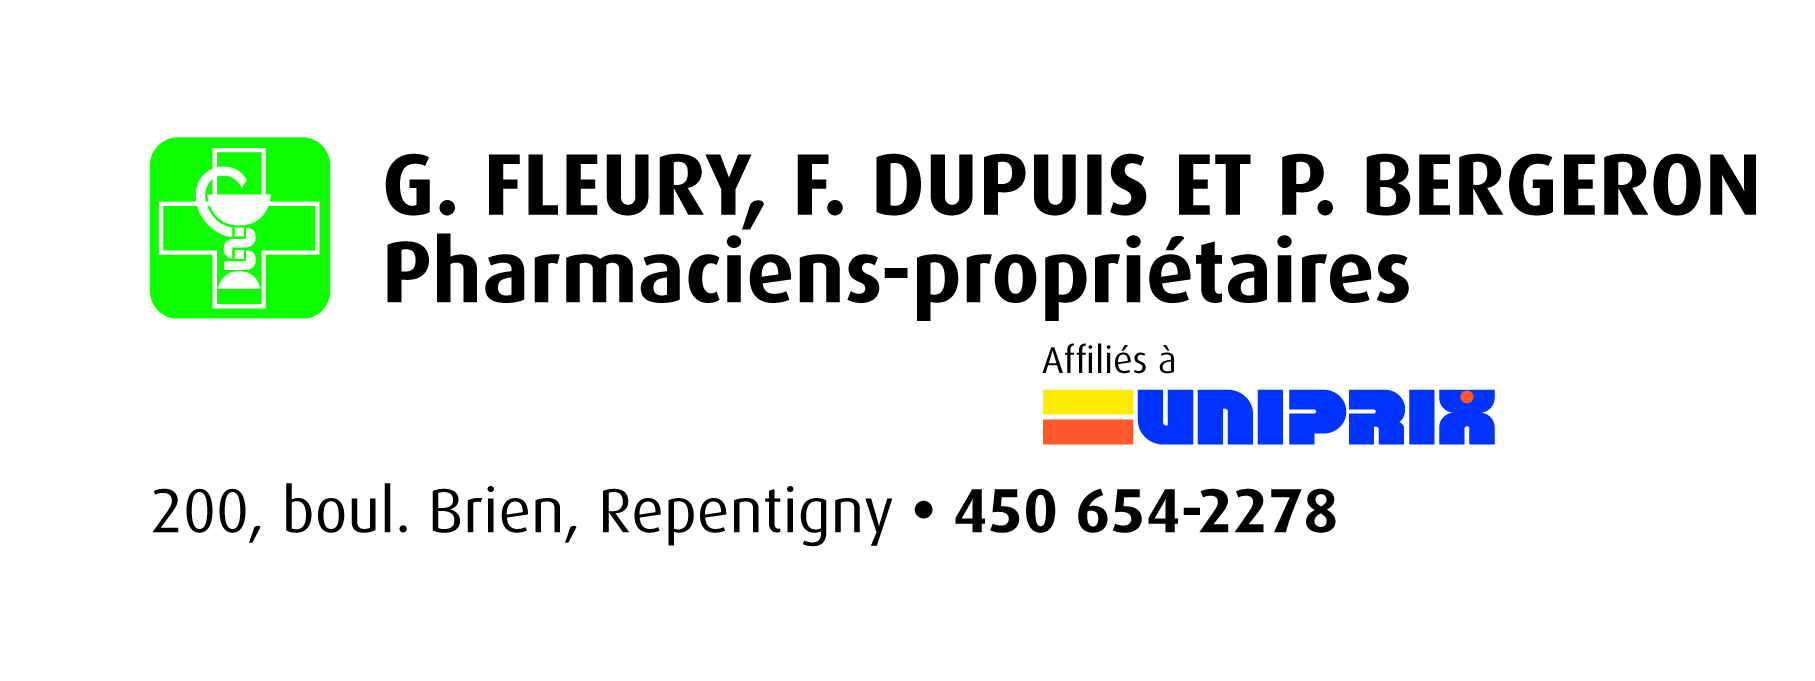 Logo Uniprix Fleury Dupuis Bergeron Repentigny